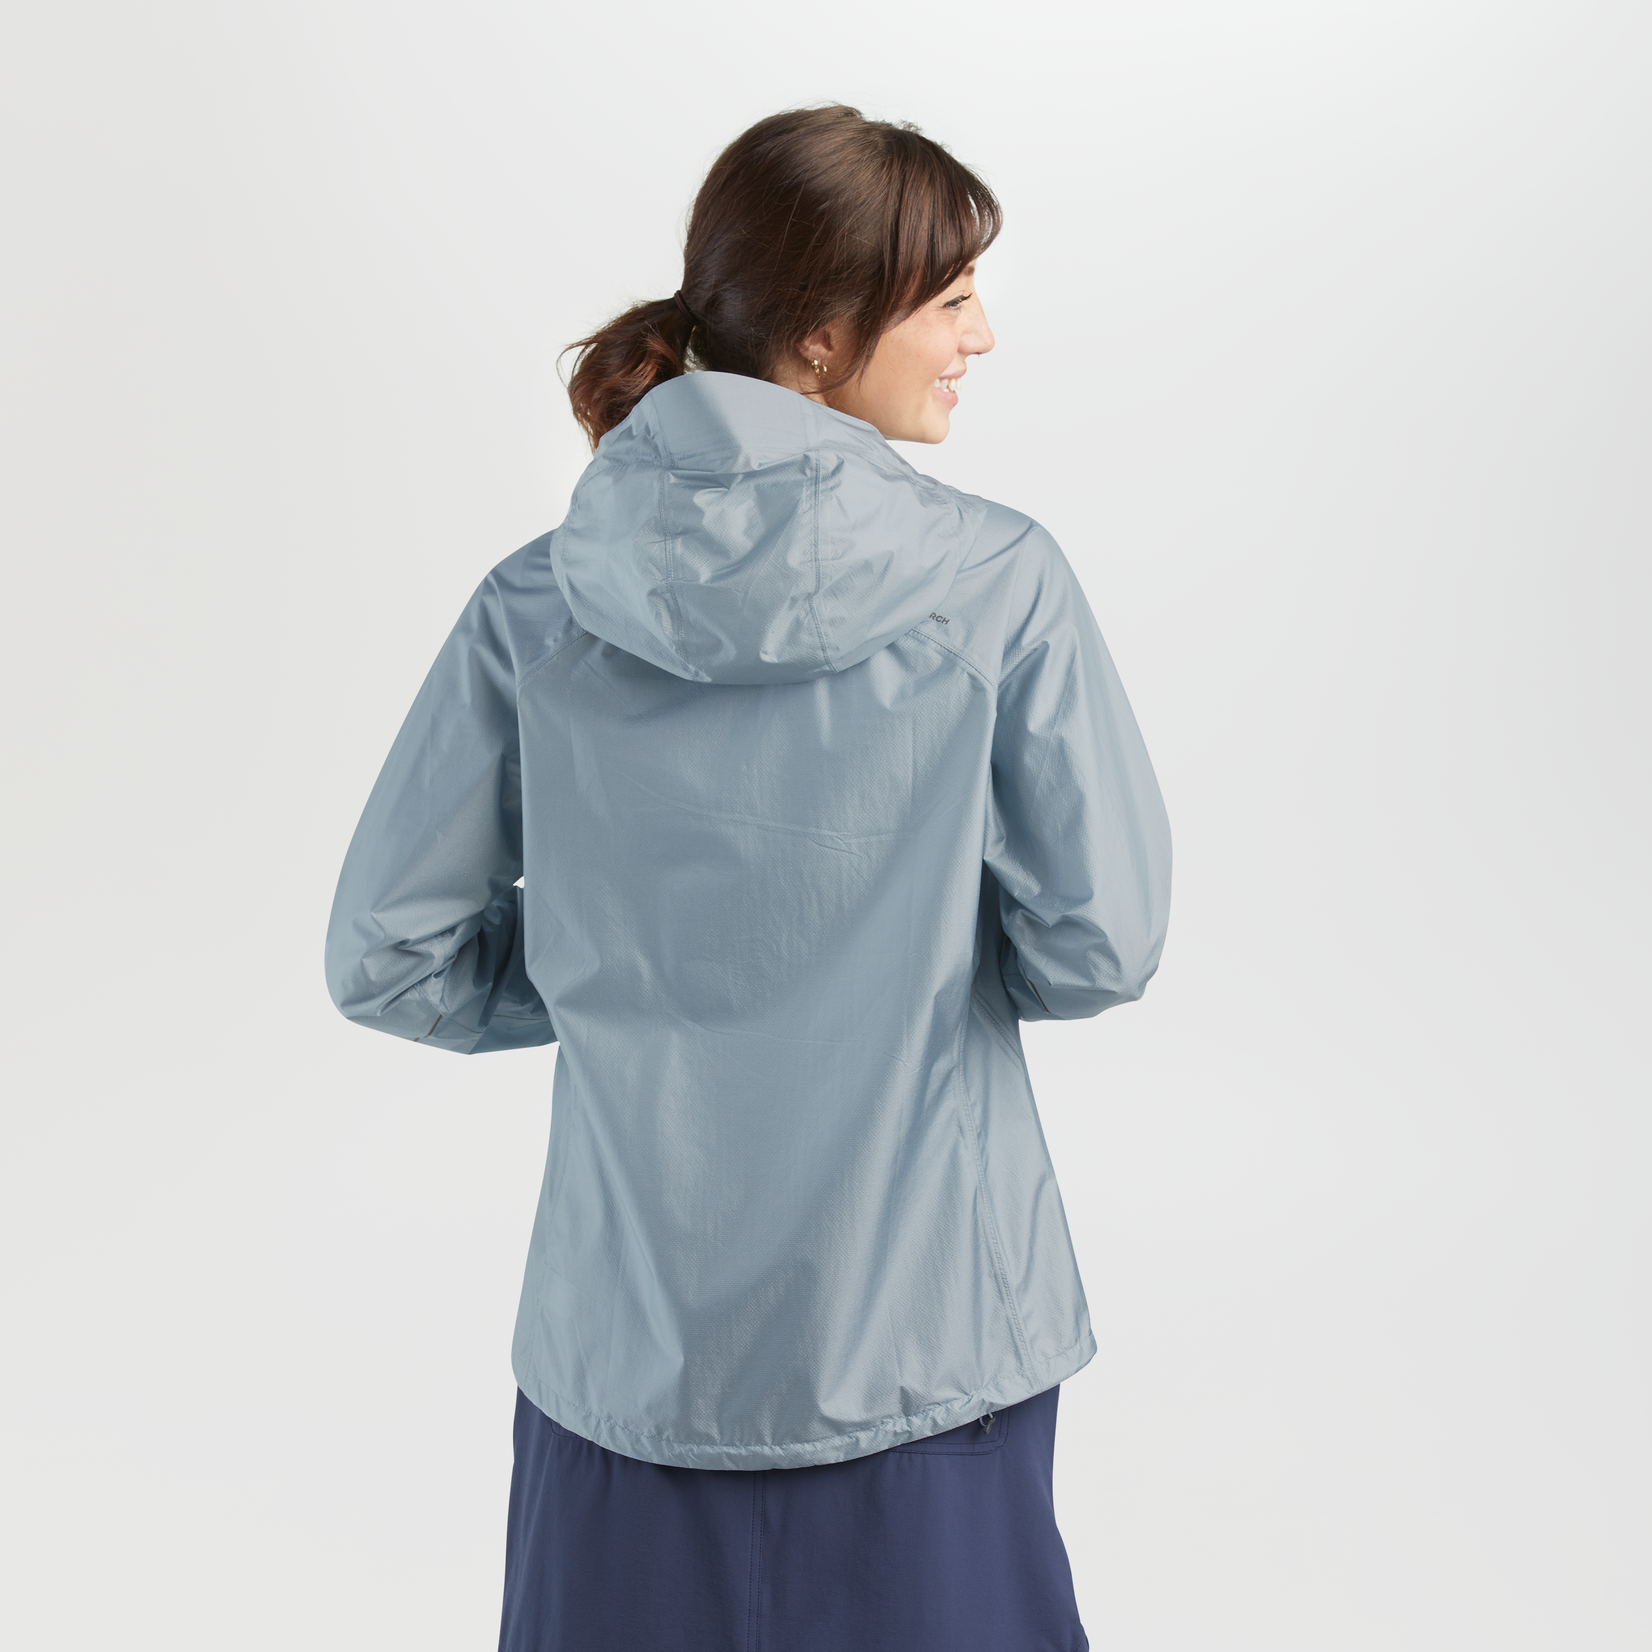 Outdoor Research Women's Helium Rain Jacket